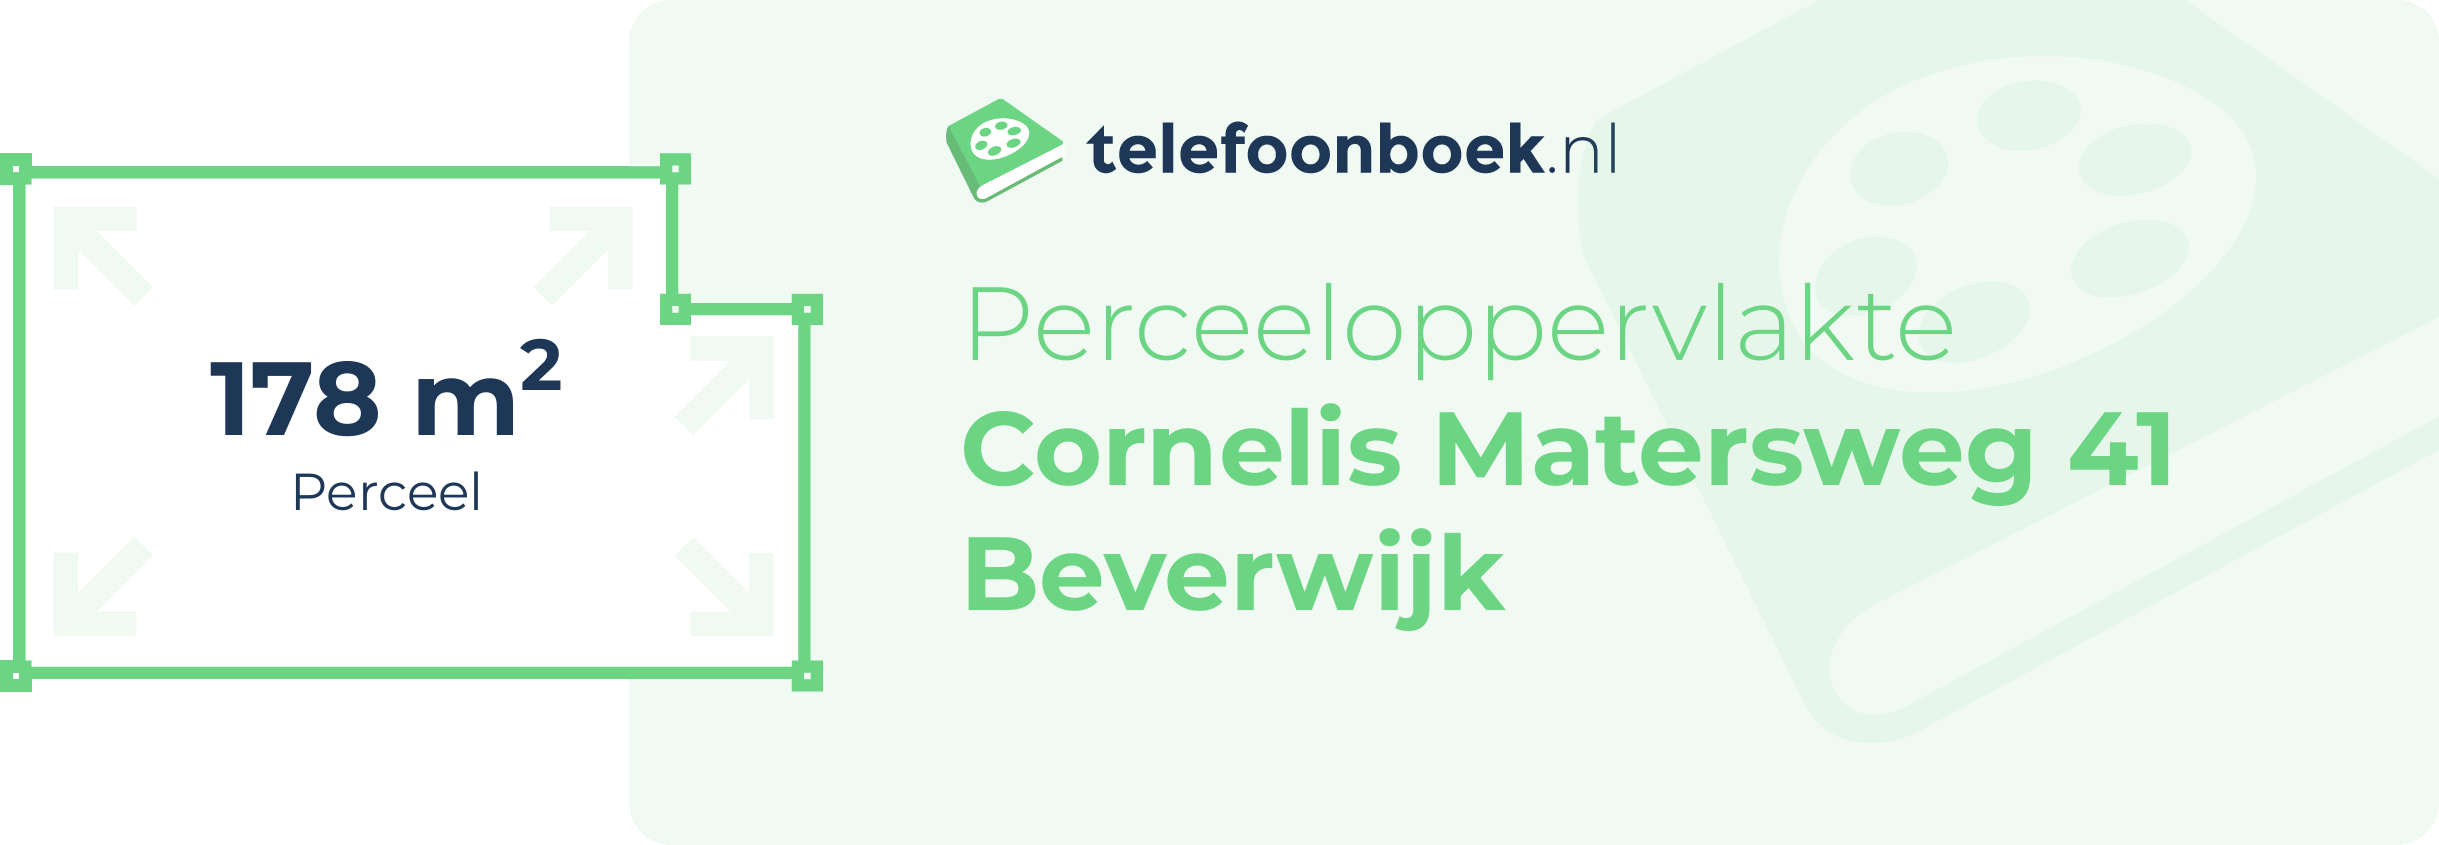 Perceeloppervlakte Cornelis Matersweg 41 Beverwijk